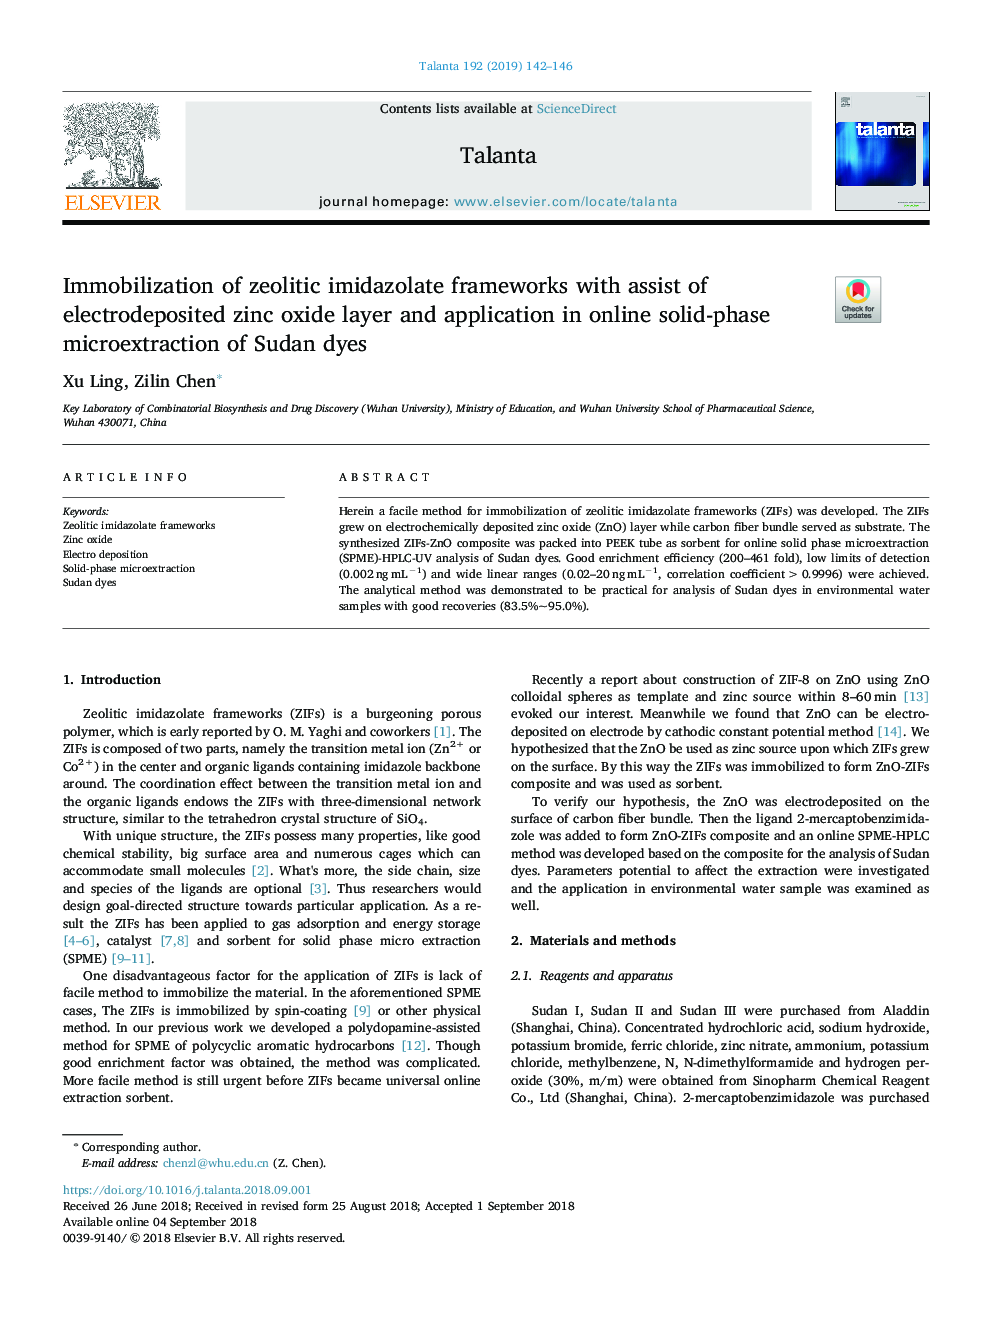 امولسیون چارچوب ایمئیدازول زئولیتیک با استفاده از لایه اکسید روی الکترودهایی شده و کاربرد آن در بیان فراکسیون جامدات جامد در رنگ های سودان